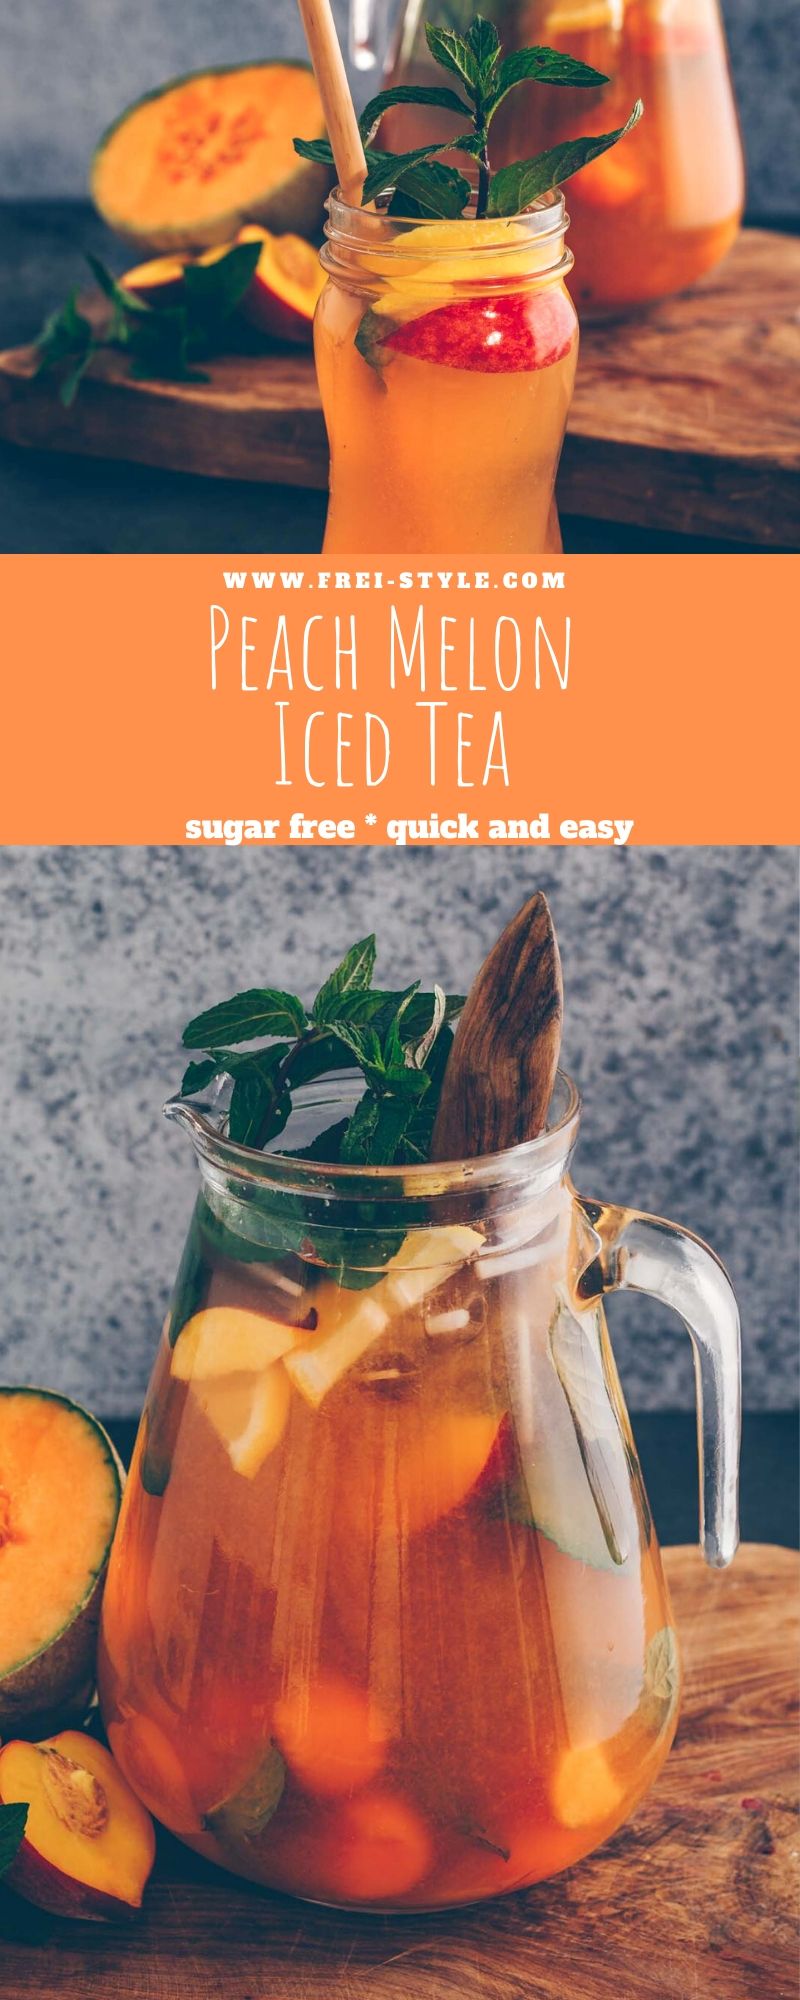 Peach Melon iced tea